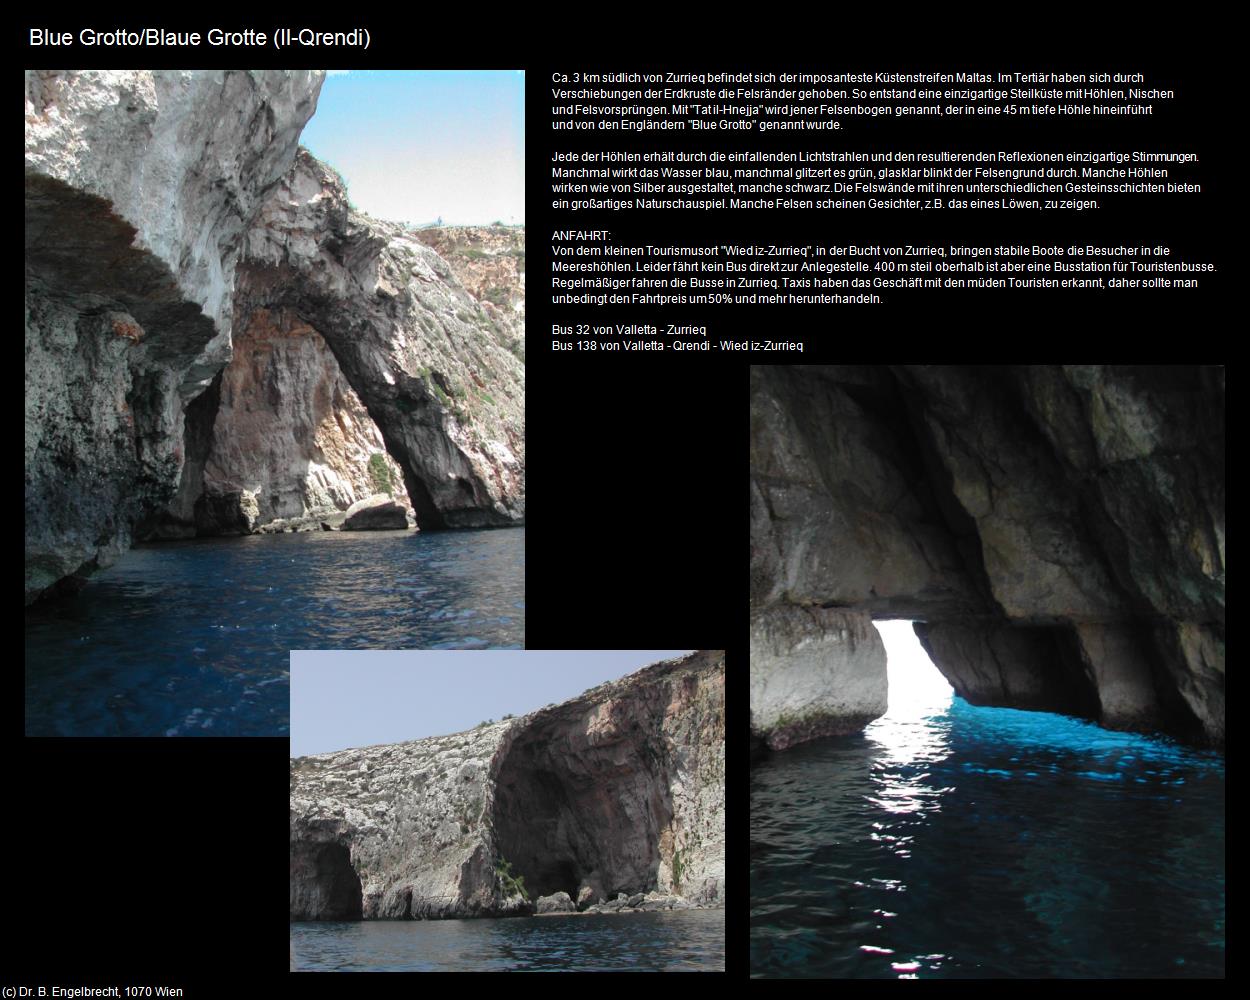 Blue Grotto/Blaue Grotte (Il-Qrendi auf Malta) in Malta - Perle im Mittelmeer